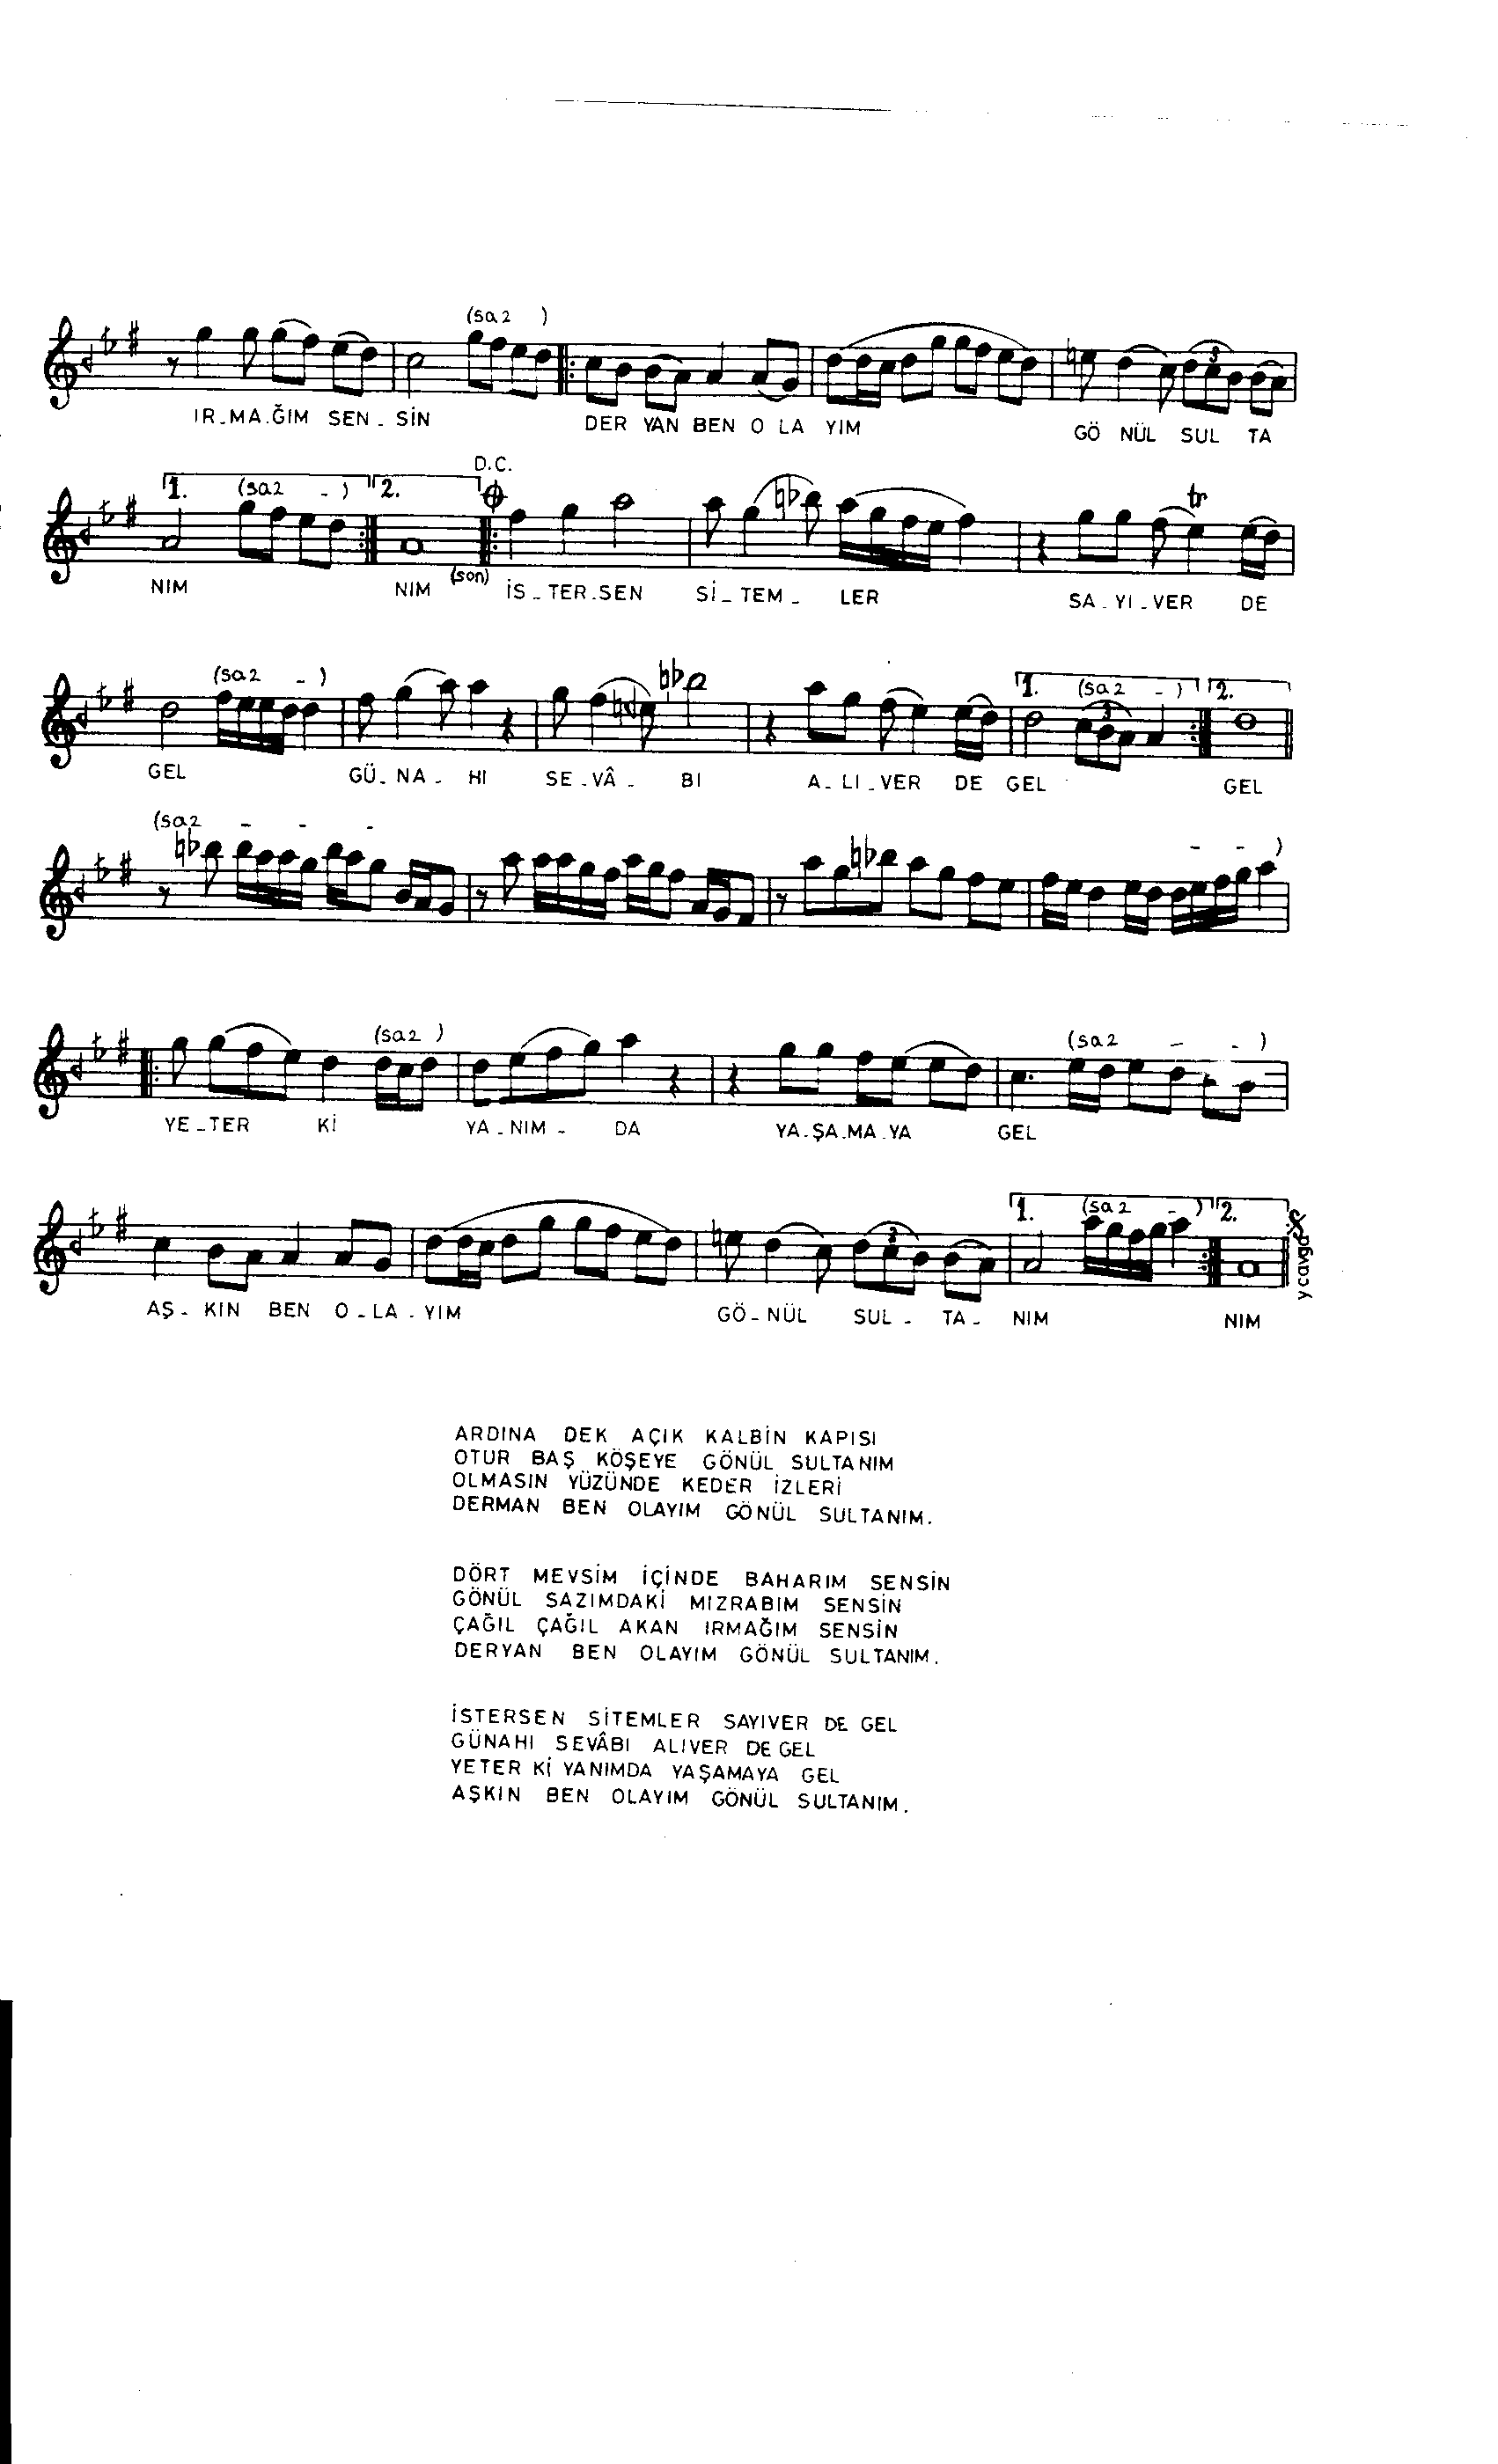 Karcığar - Şarkı - Bilge Özgen - Sayfa 2